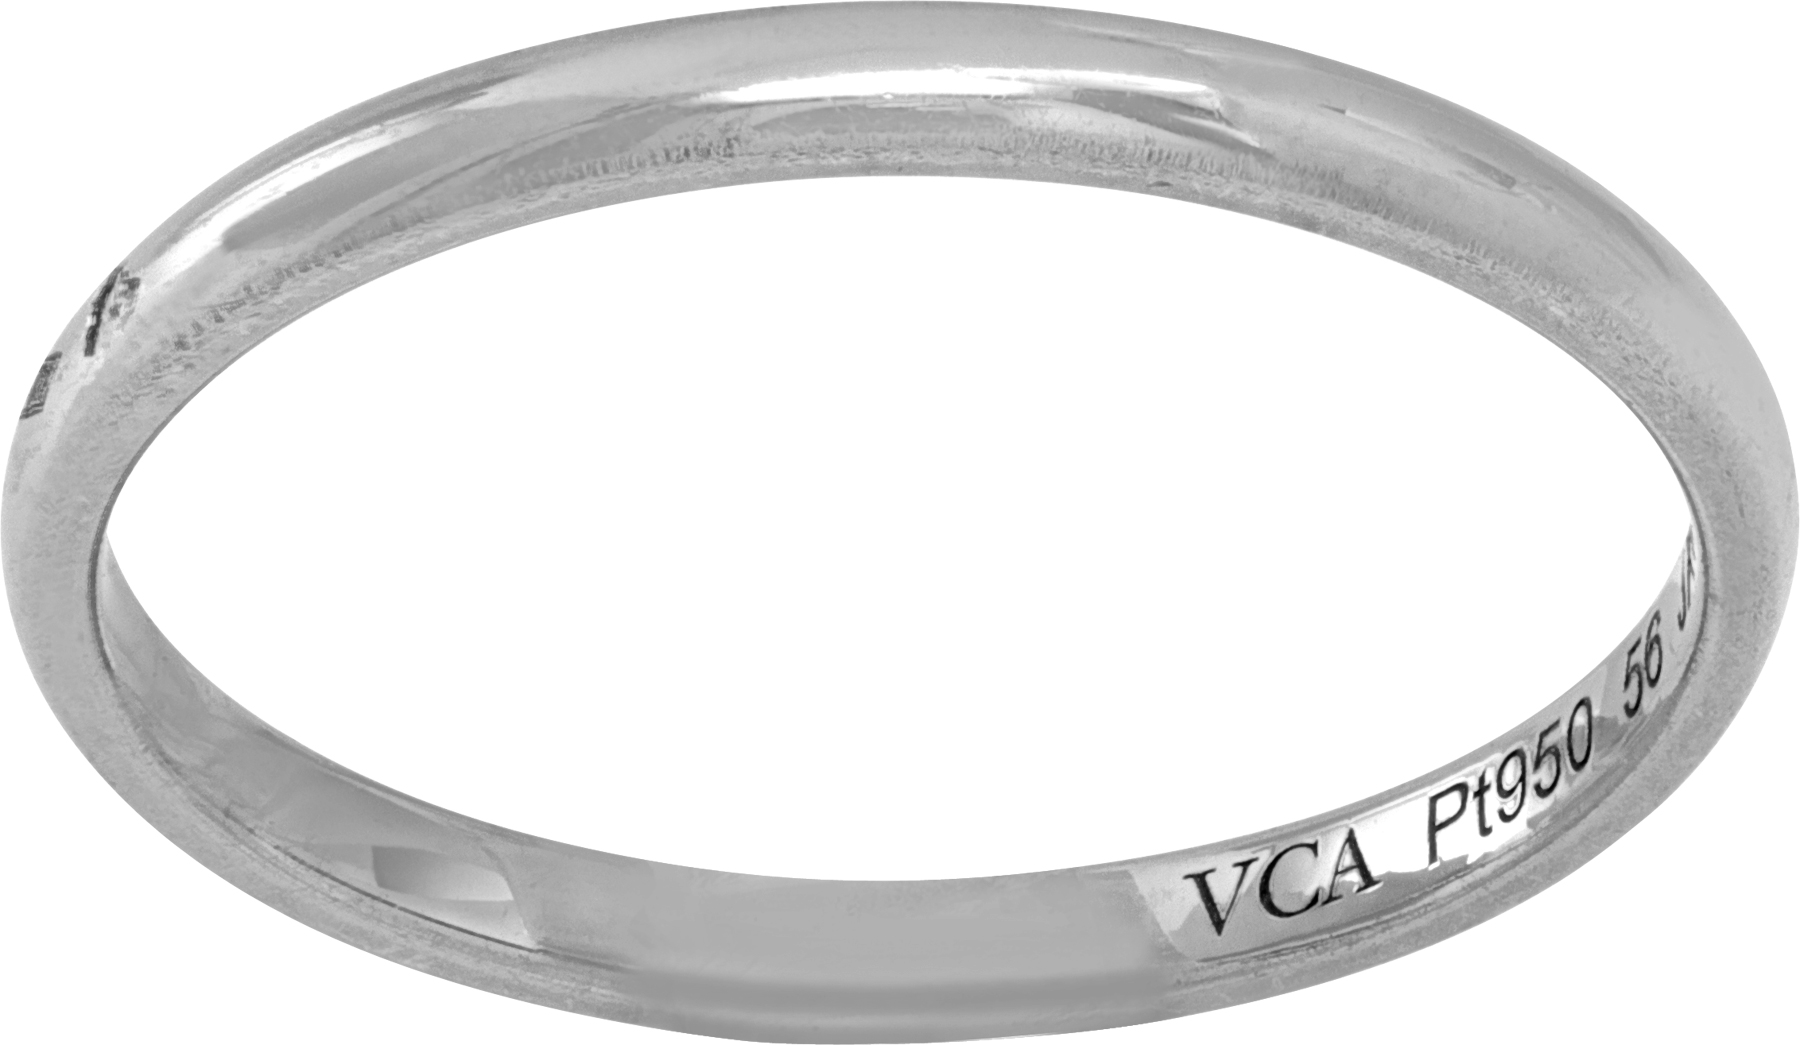 Van Cleef & Arpels platinum ring